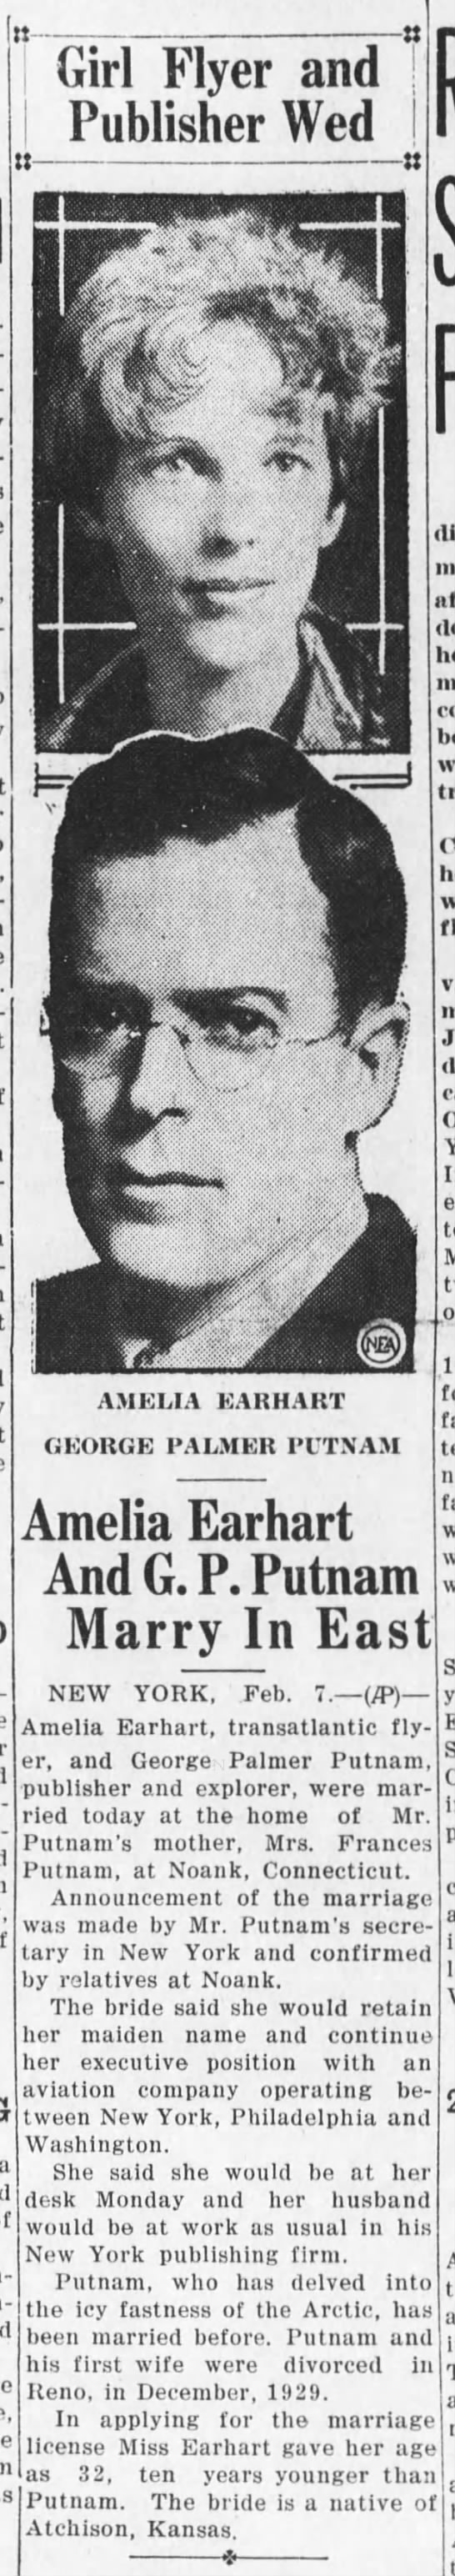 Amelia Earhart marries G.P. Putnam - 